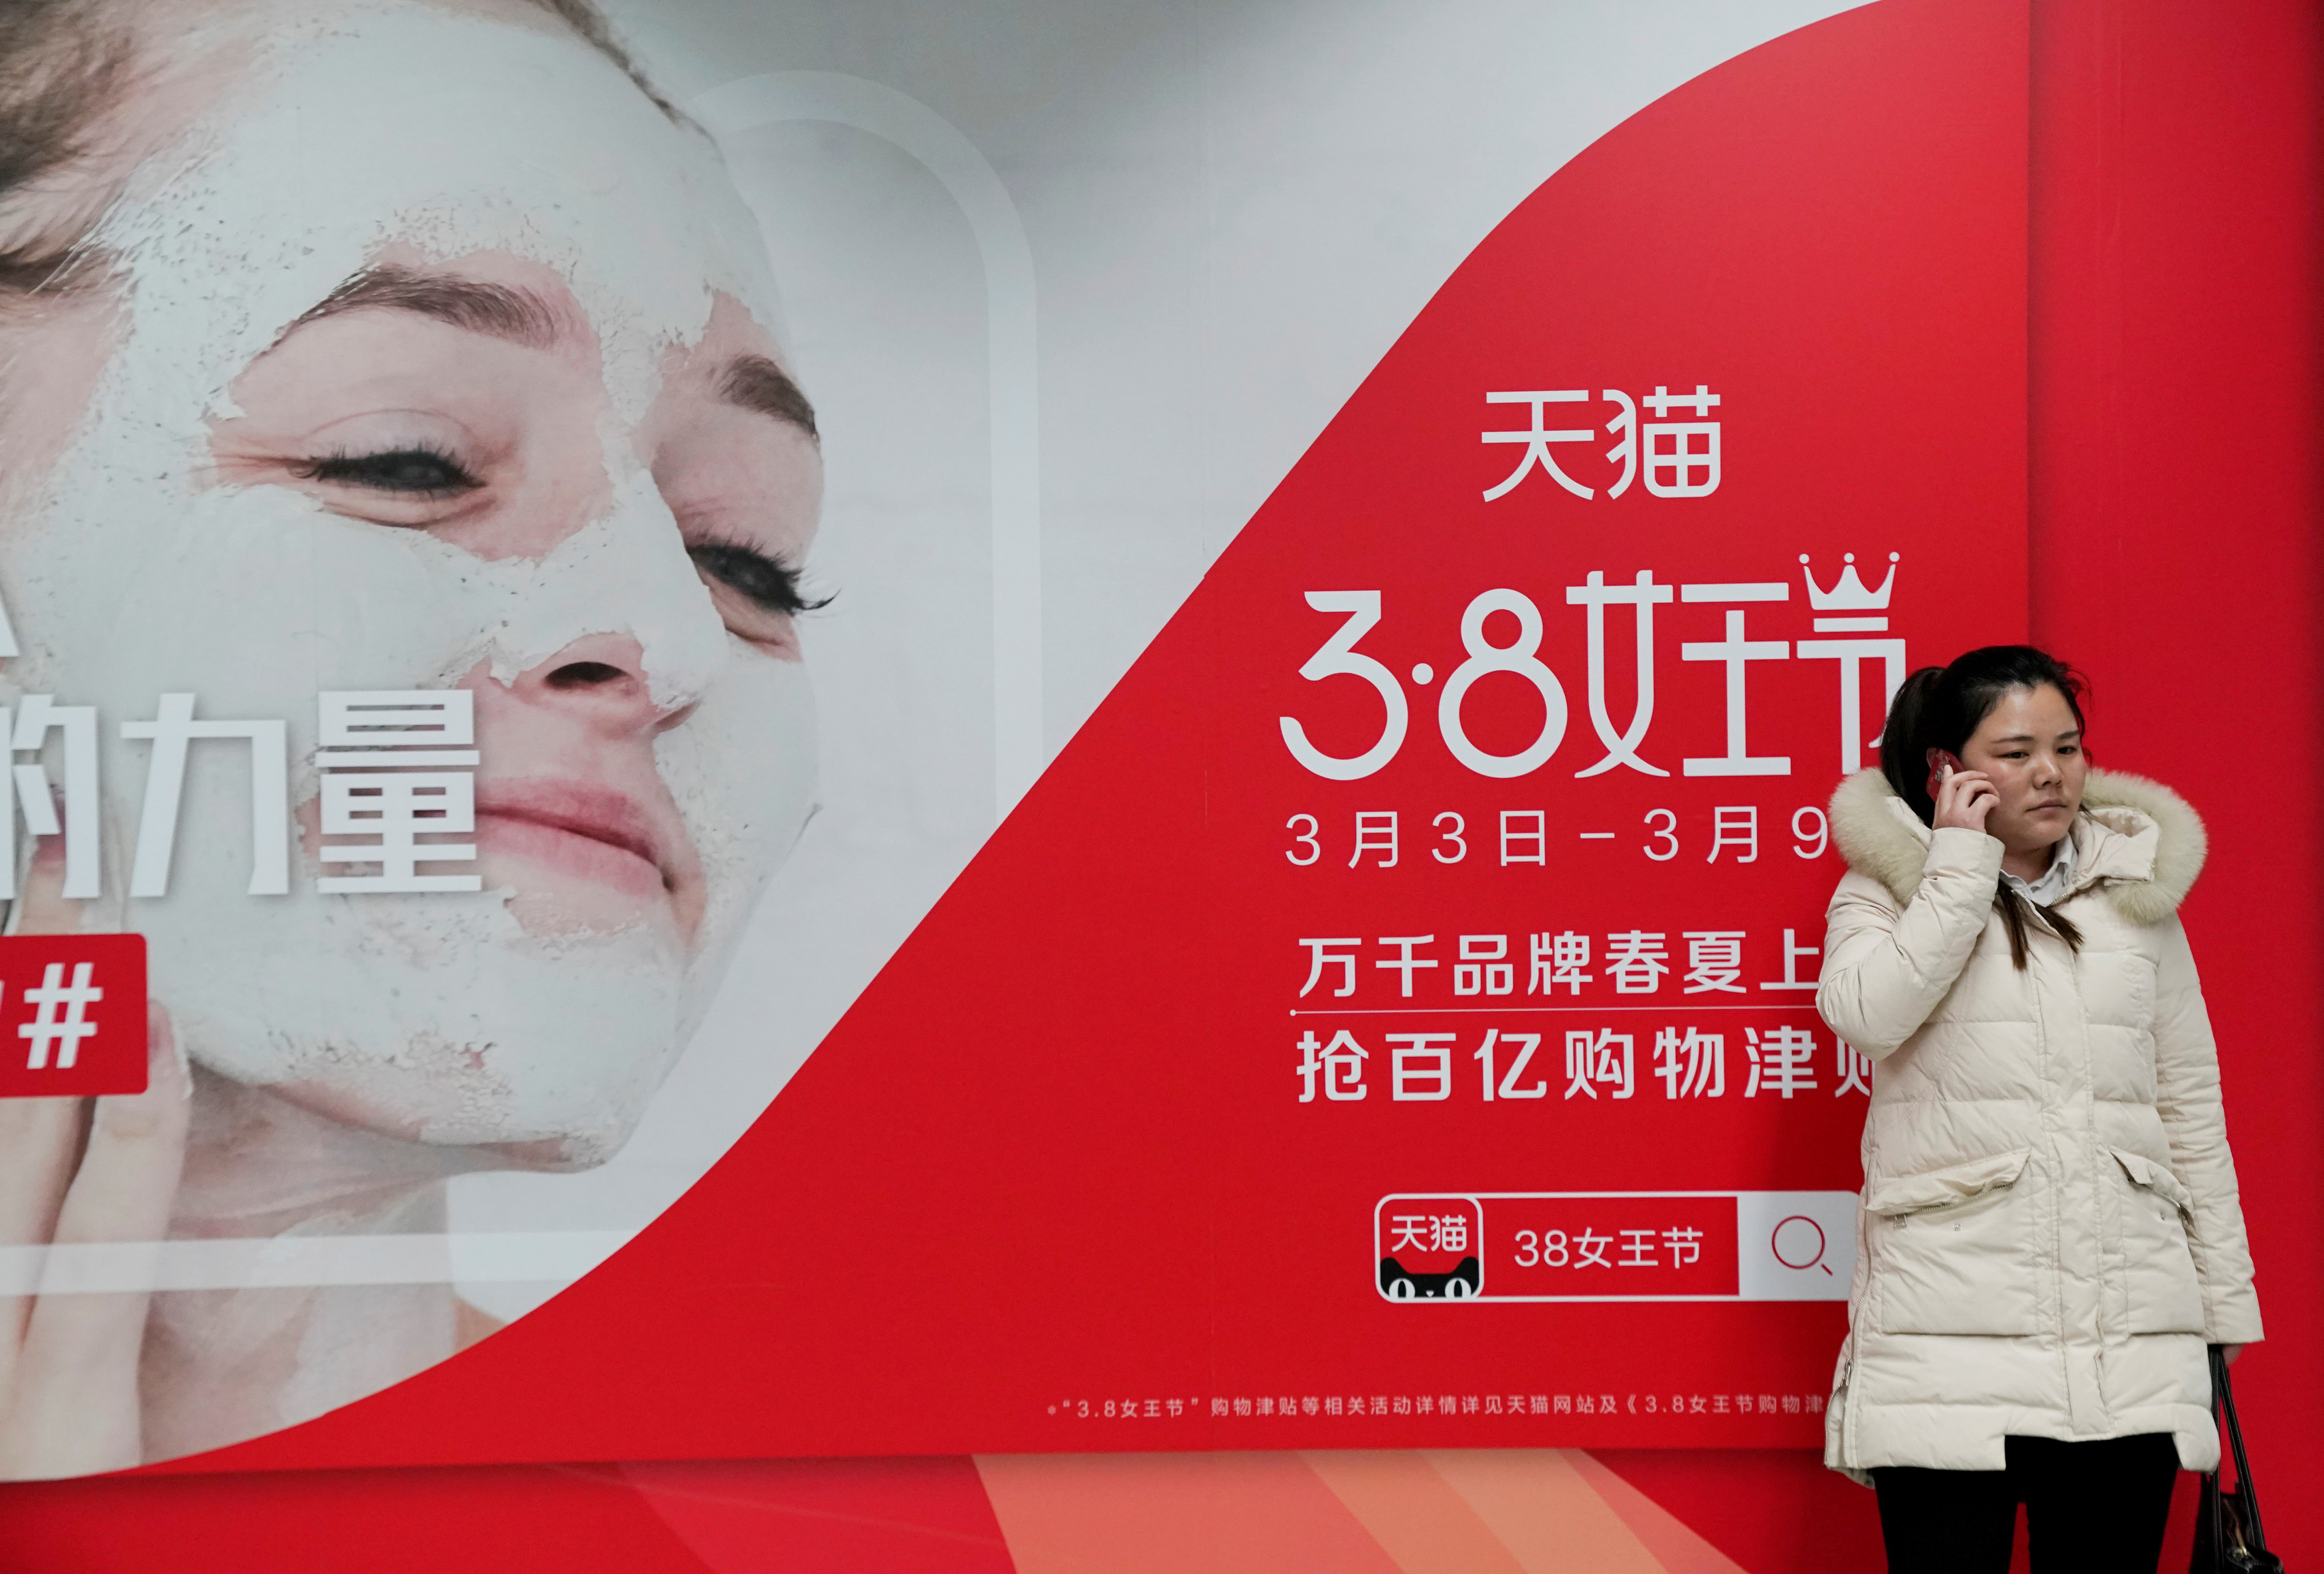 لافتات فى أموال تجارية فى الصين احتفالا باليوم العالمى للمرأة